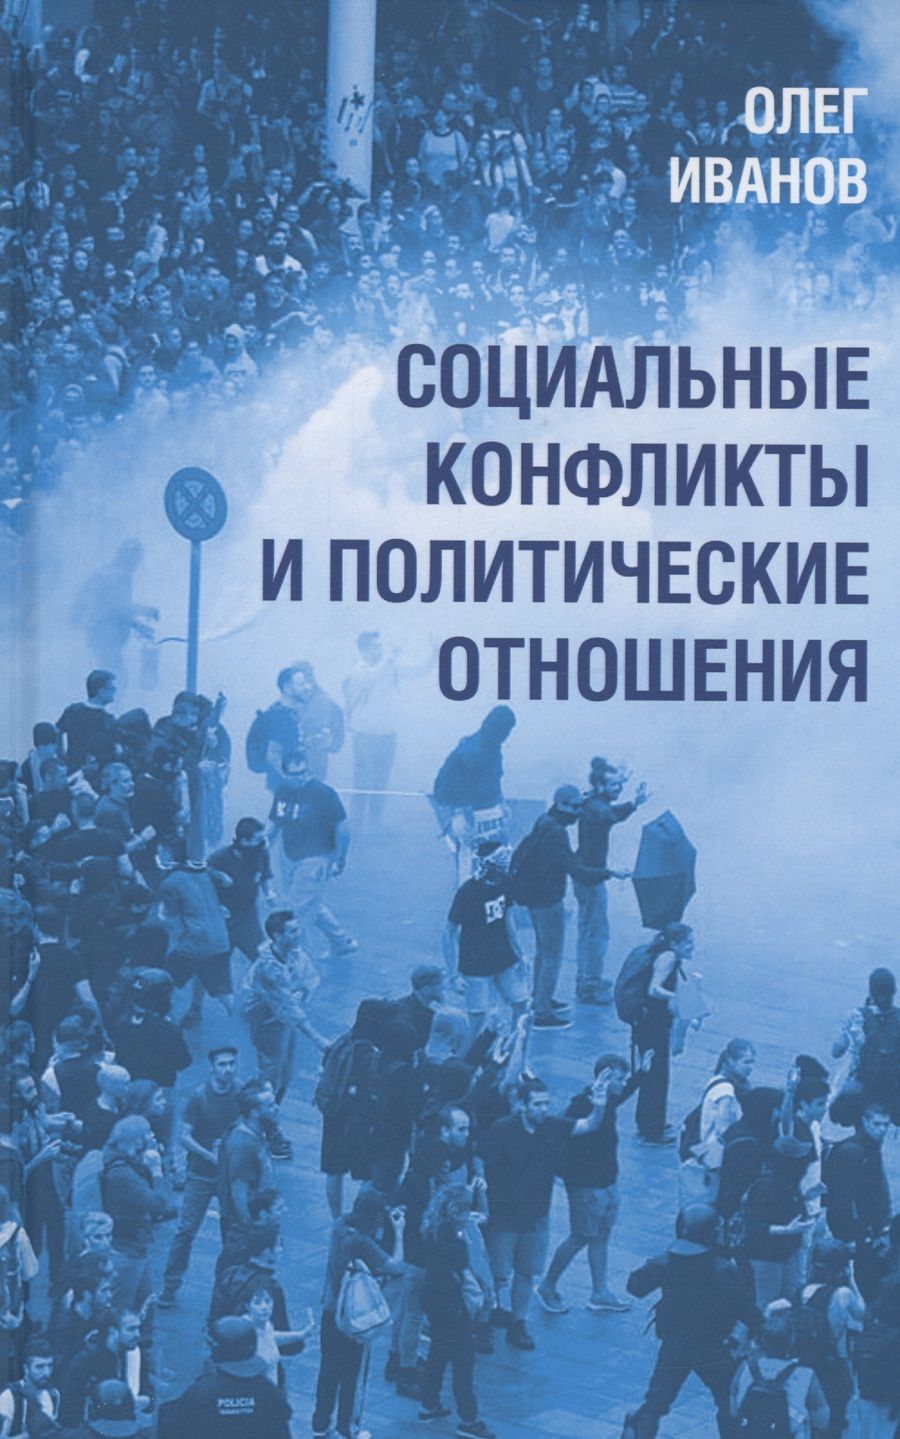 Обложка книги "Иванов: Социальные конфликты и политические отношения"